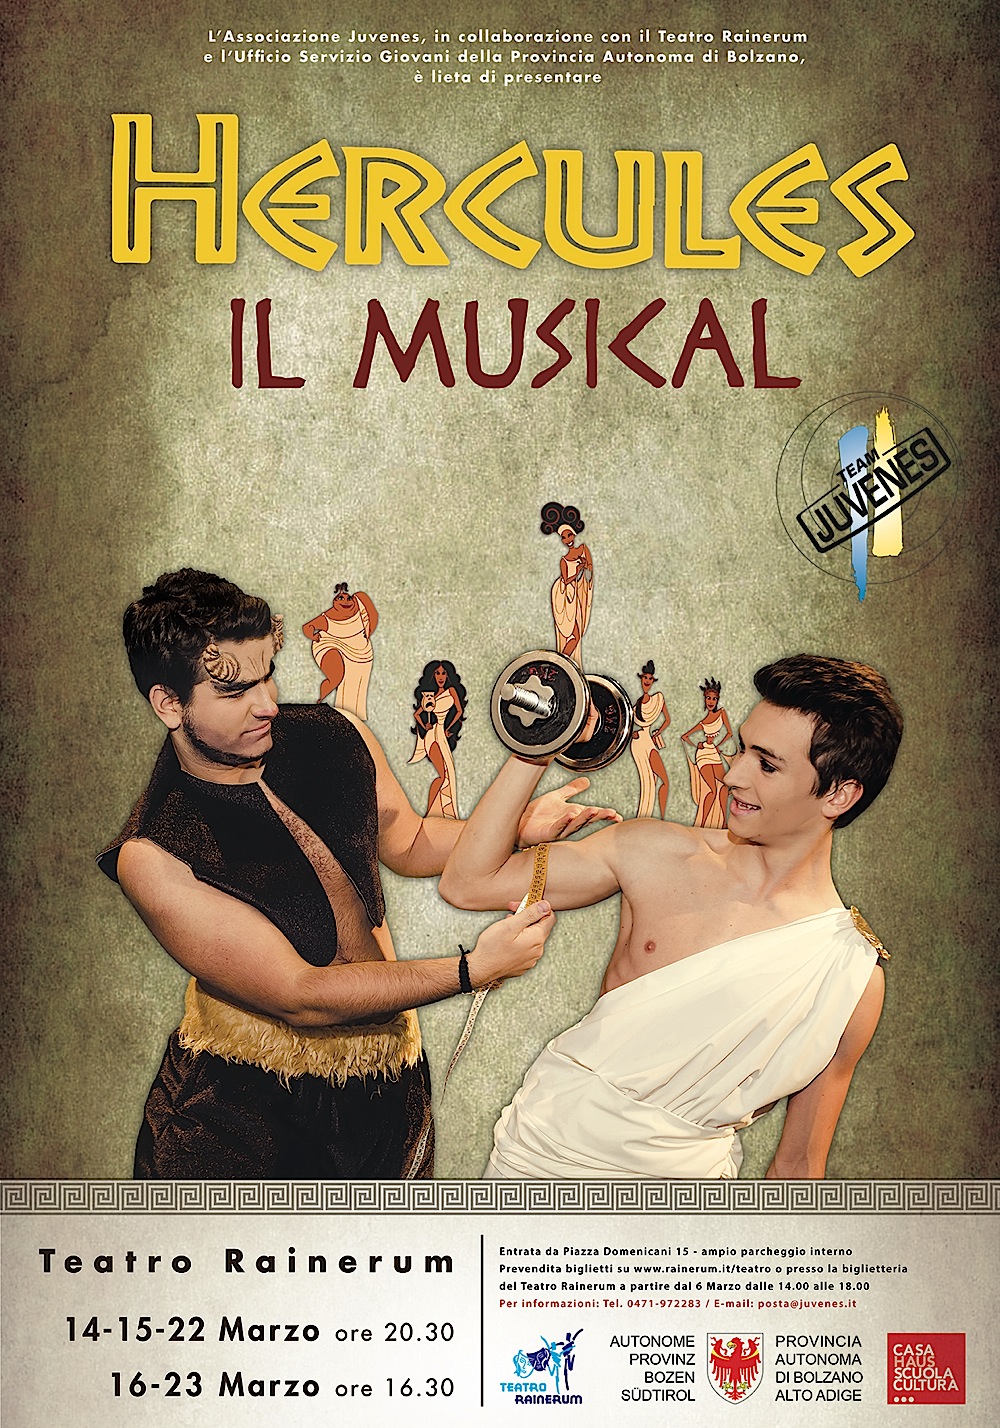 Musical 2014 – Hercules